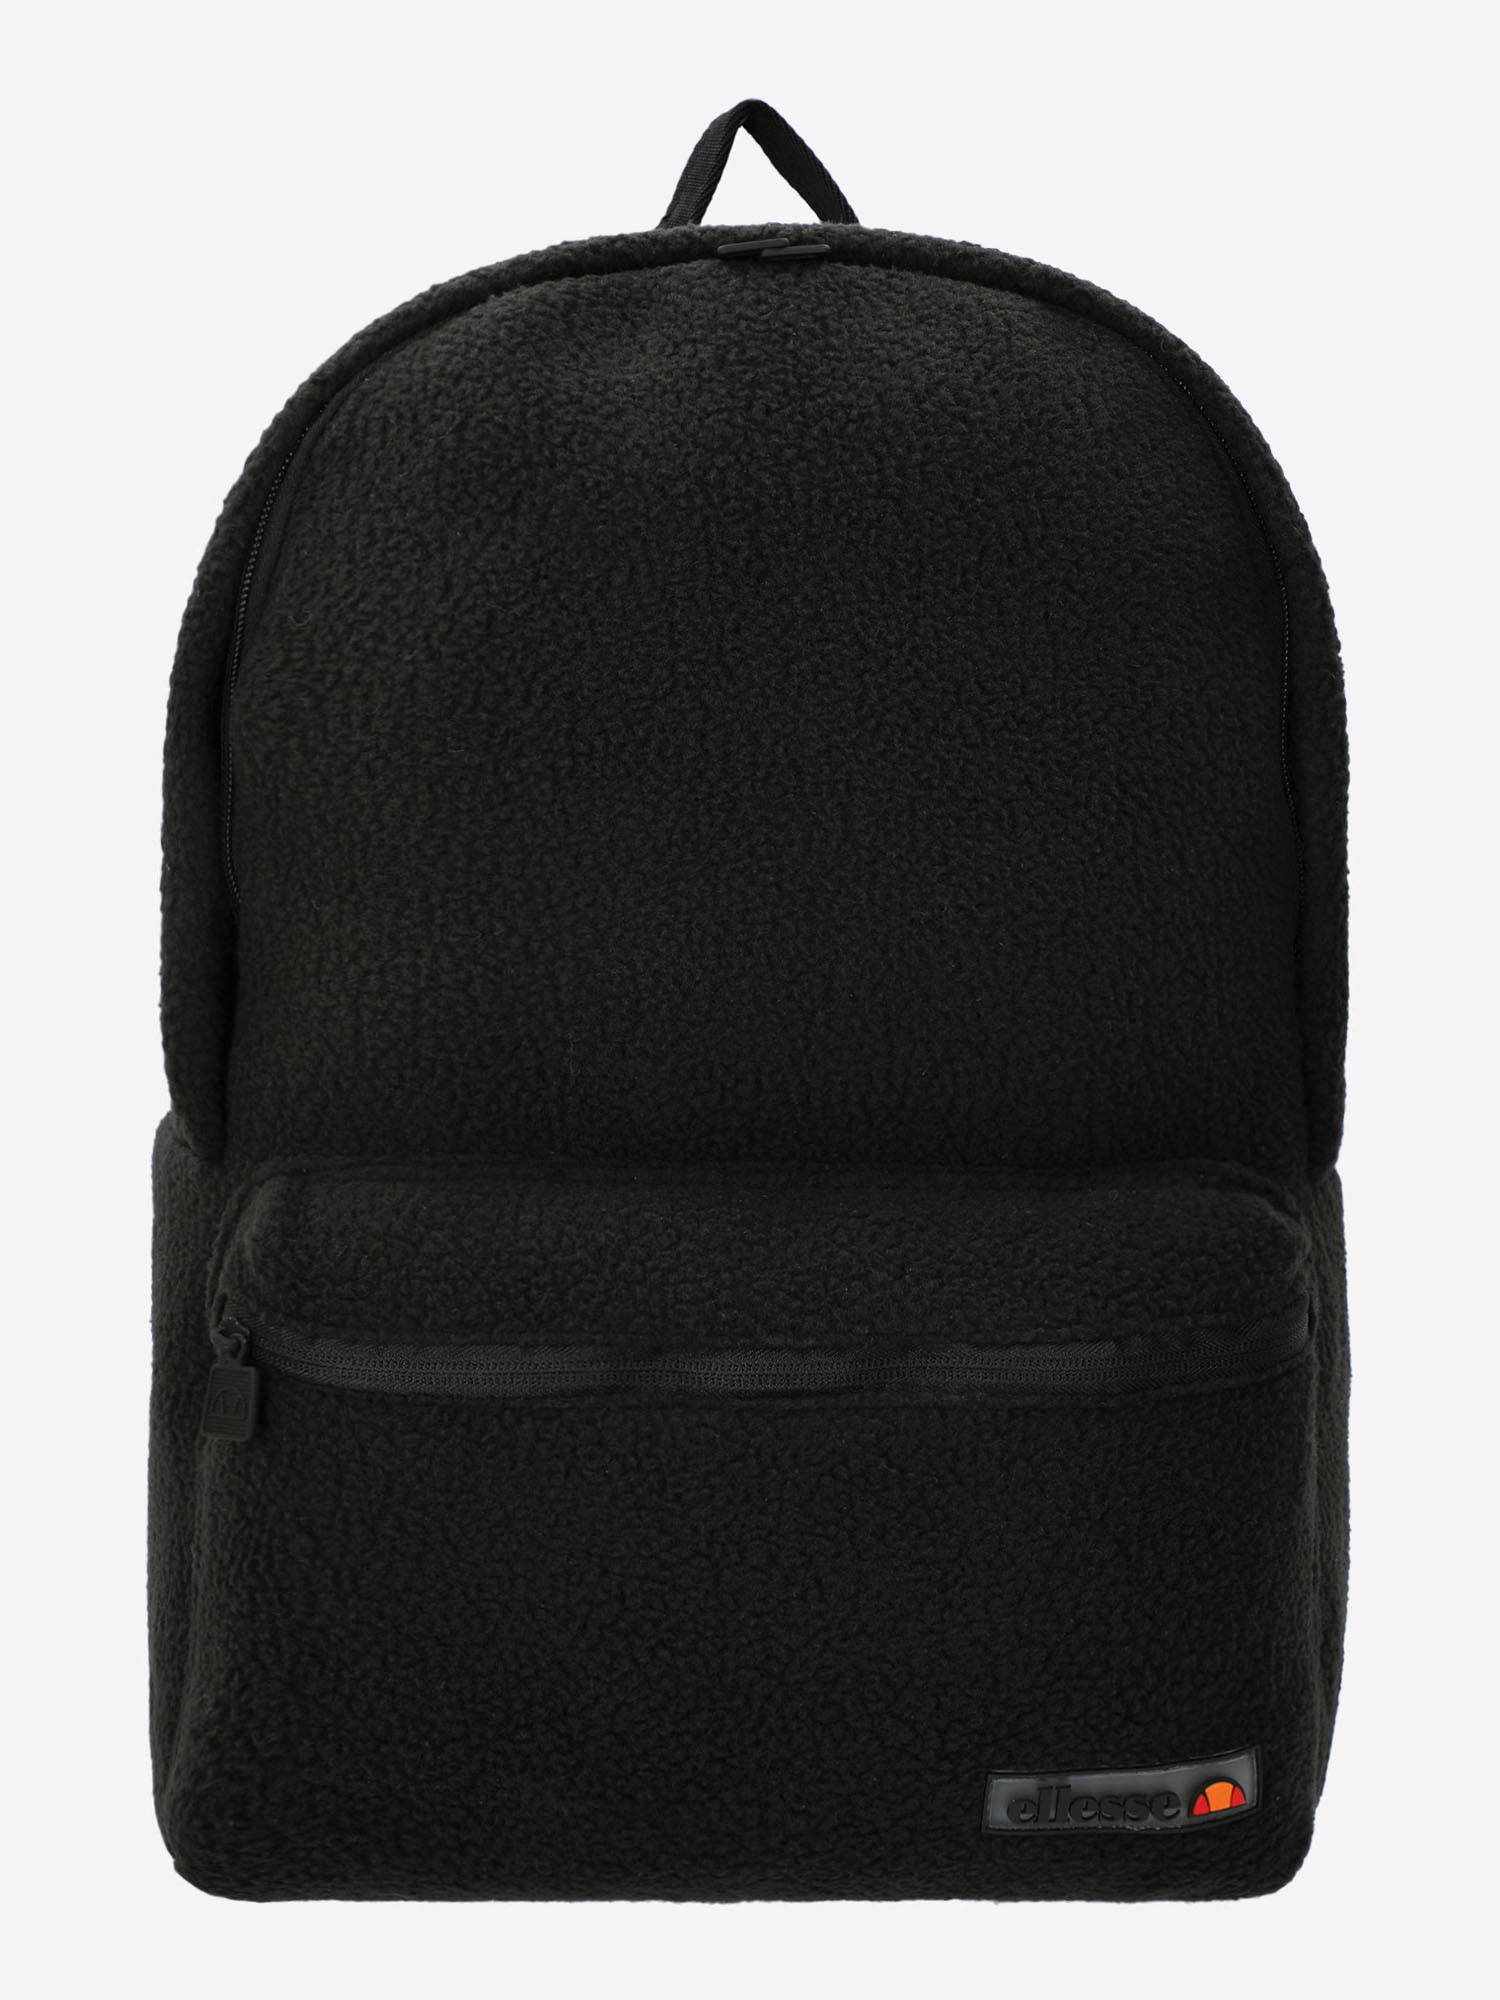 Рюкзак мужской Ellesse Orleani black, 42х31х11 см